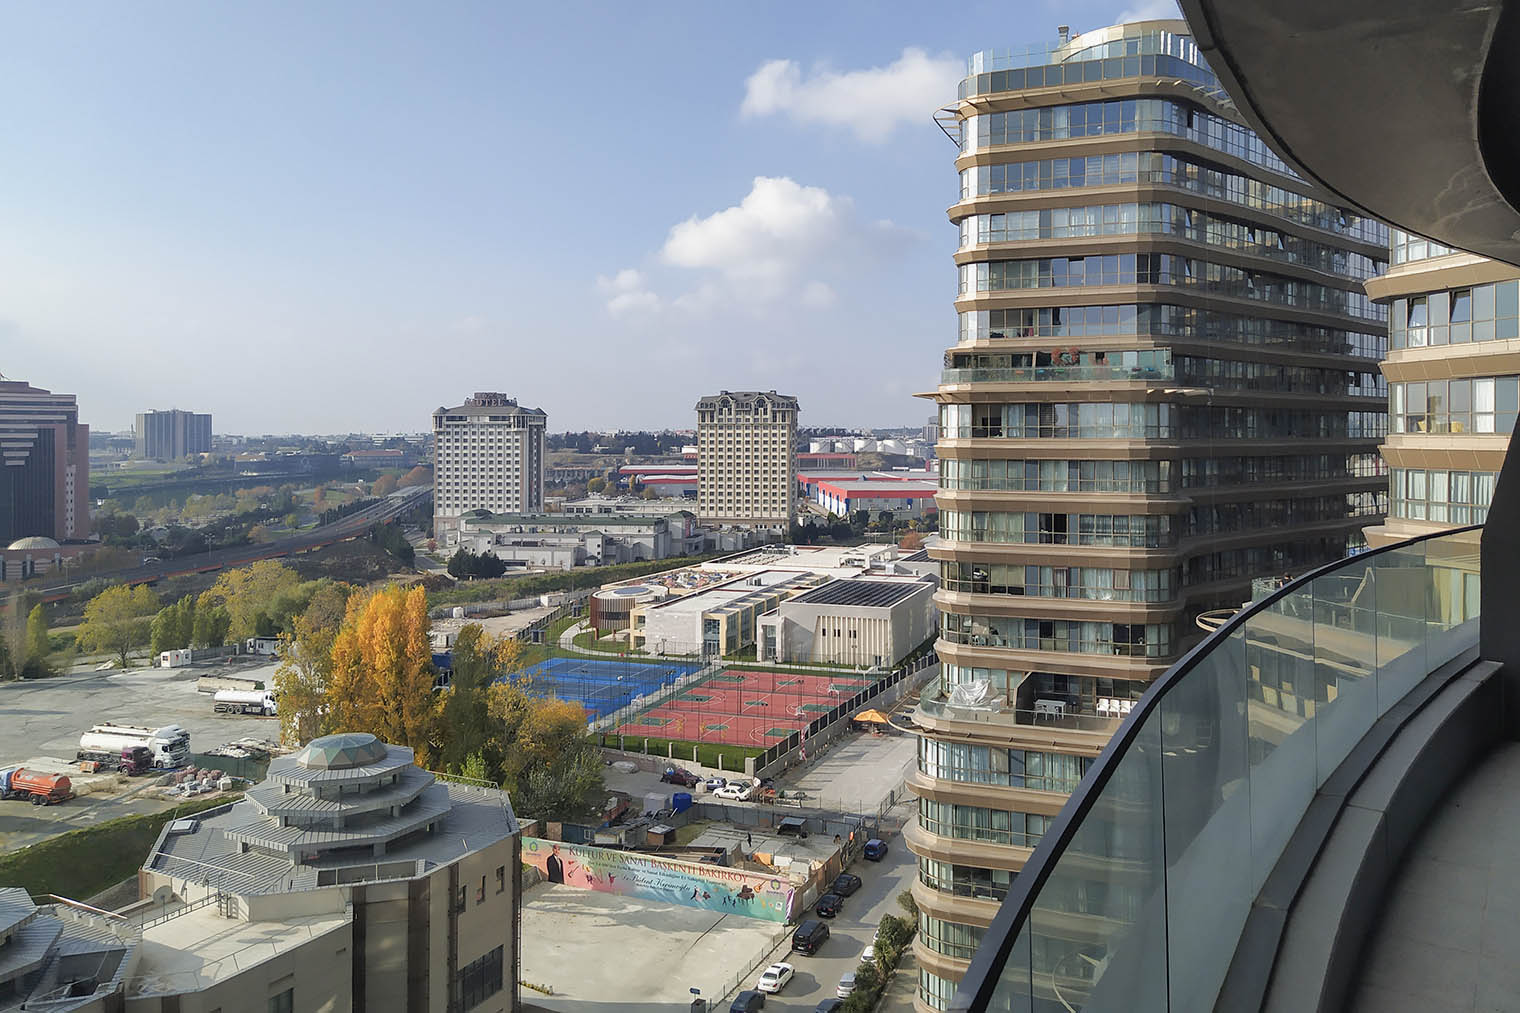 Вид на Бакыркёй с балкона квартиры, где я жил